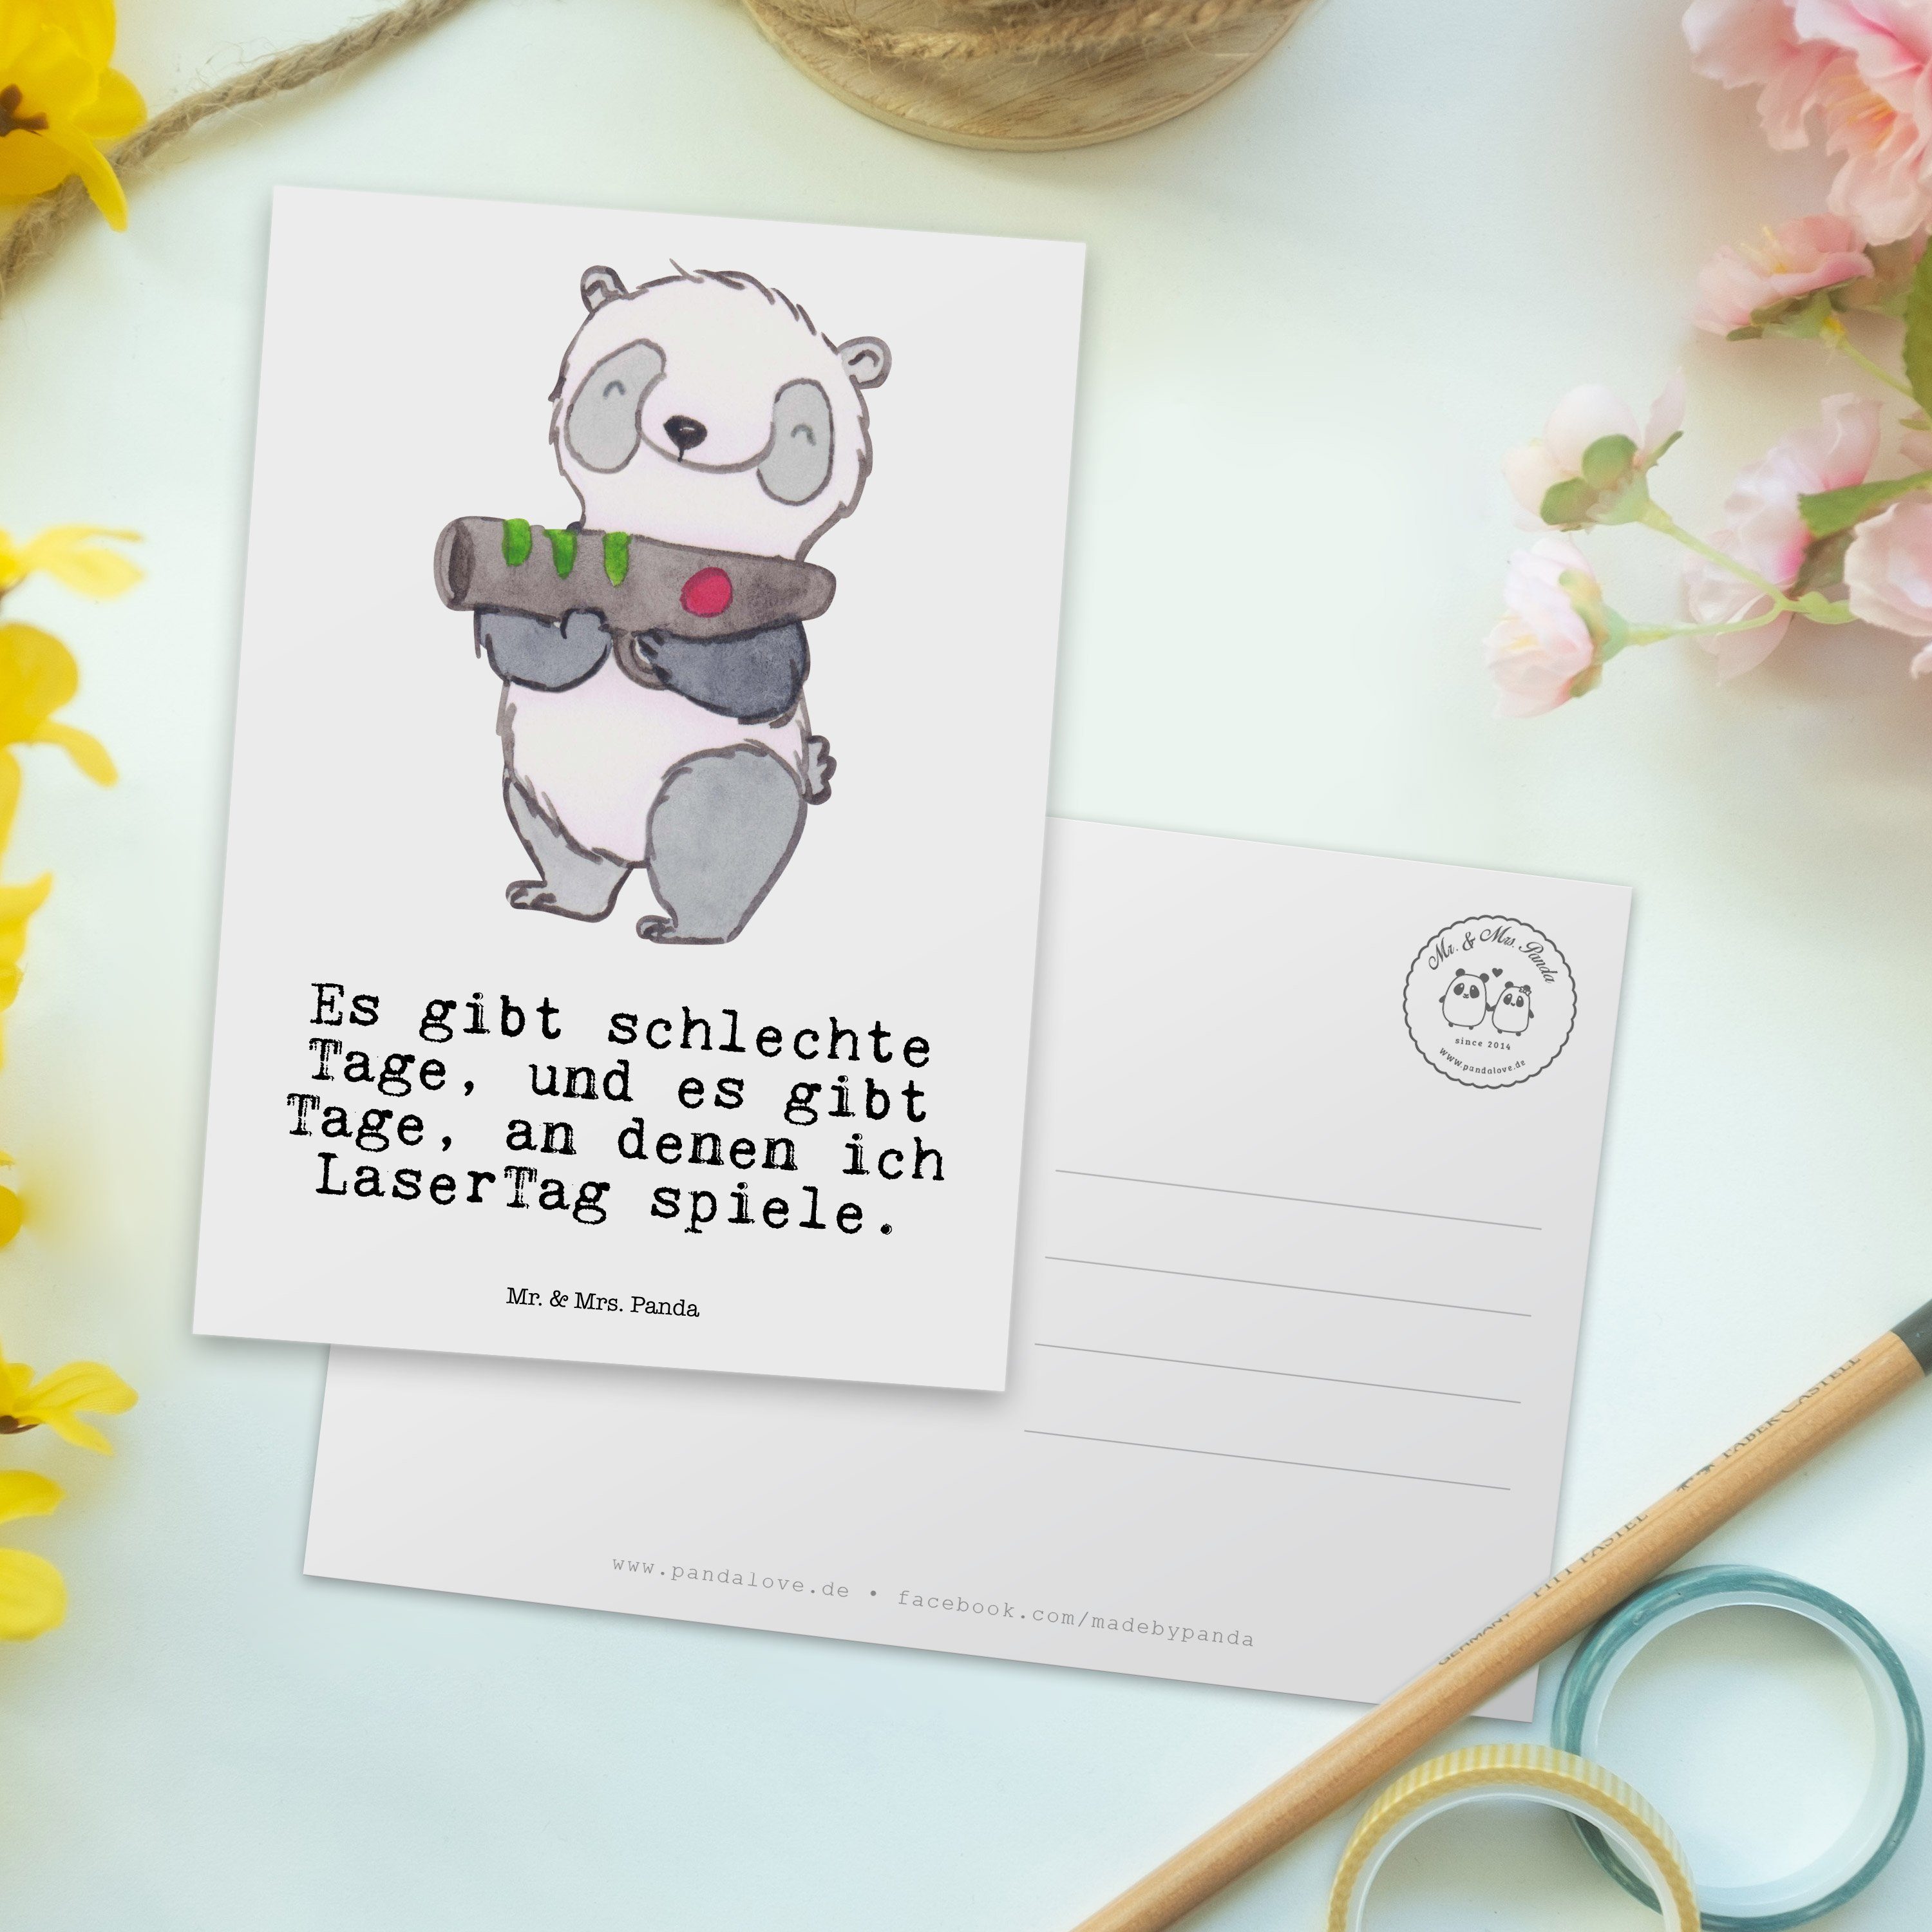 Mr. & Mrs. Panda Weiß Panda Sport, Lase Tage - Geschenk, - Postkarte Einladung, LaserTag Gewinn